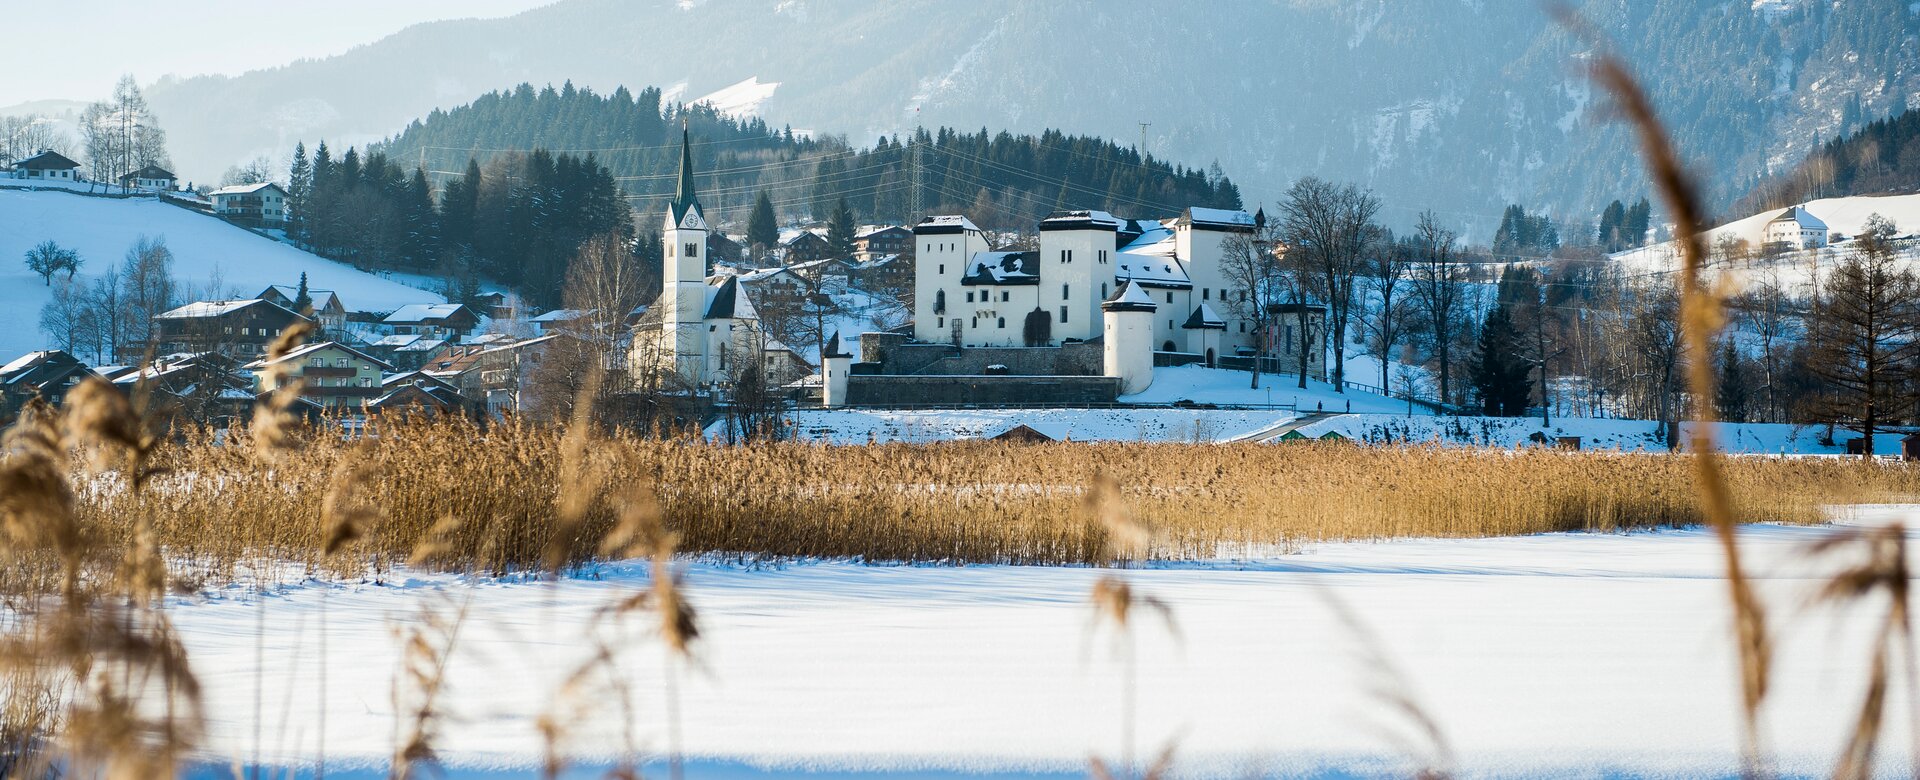 Ortsfoto Goldegg Winter | © Reidinger